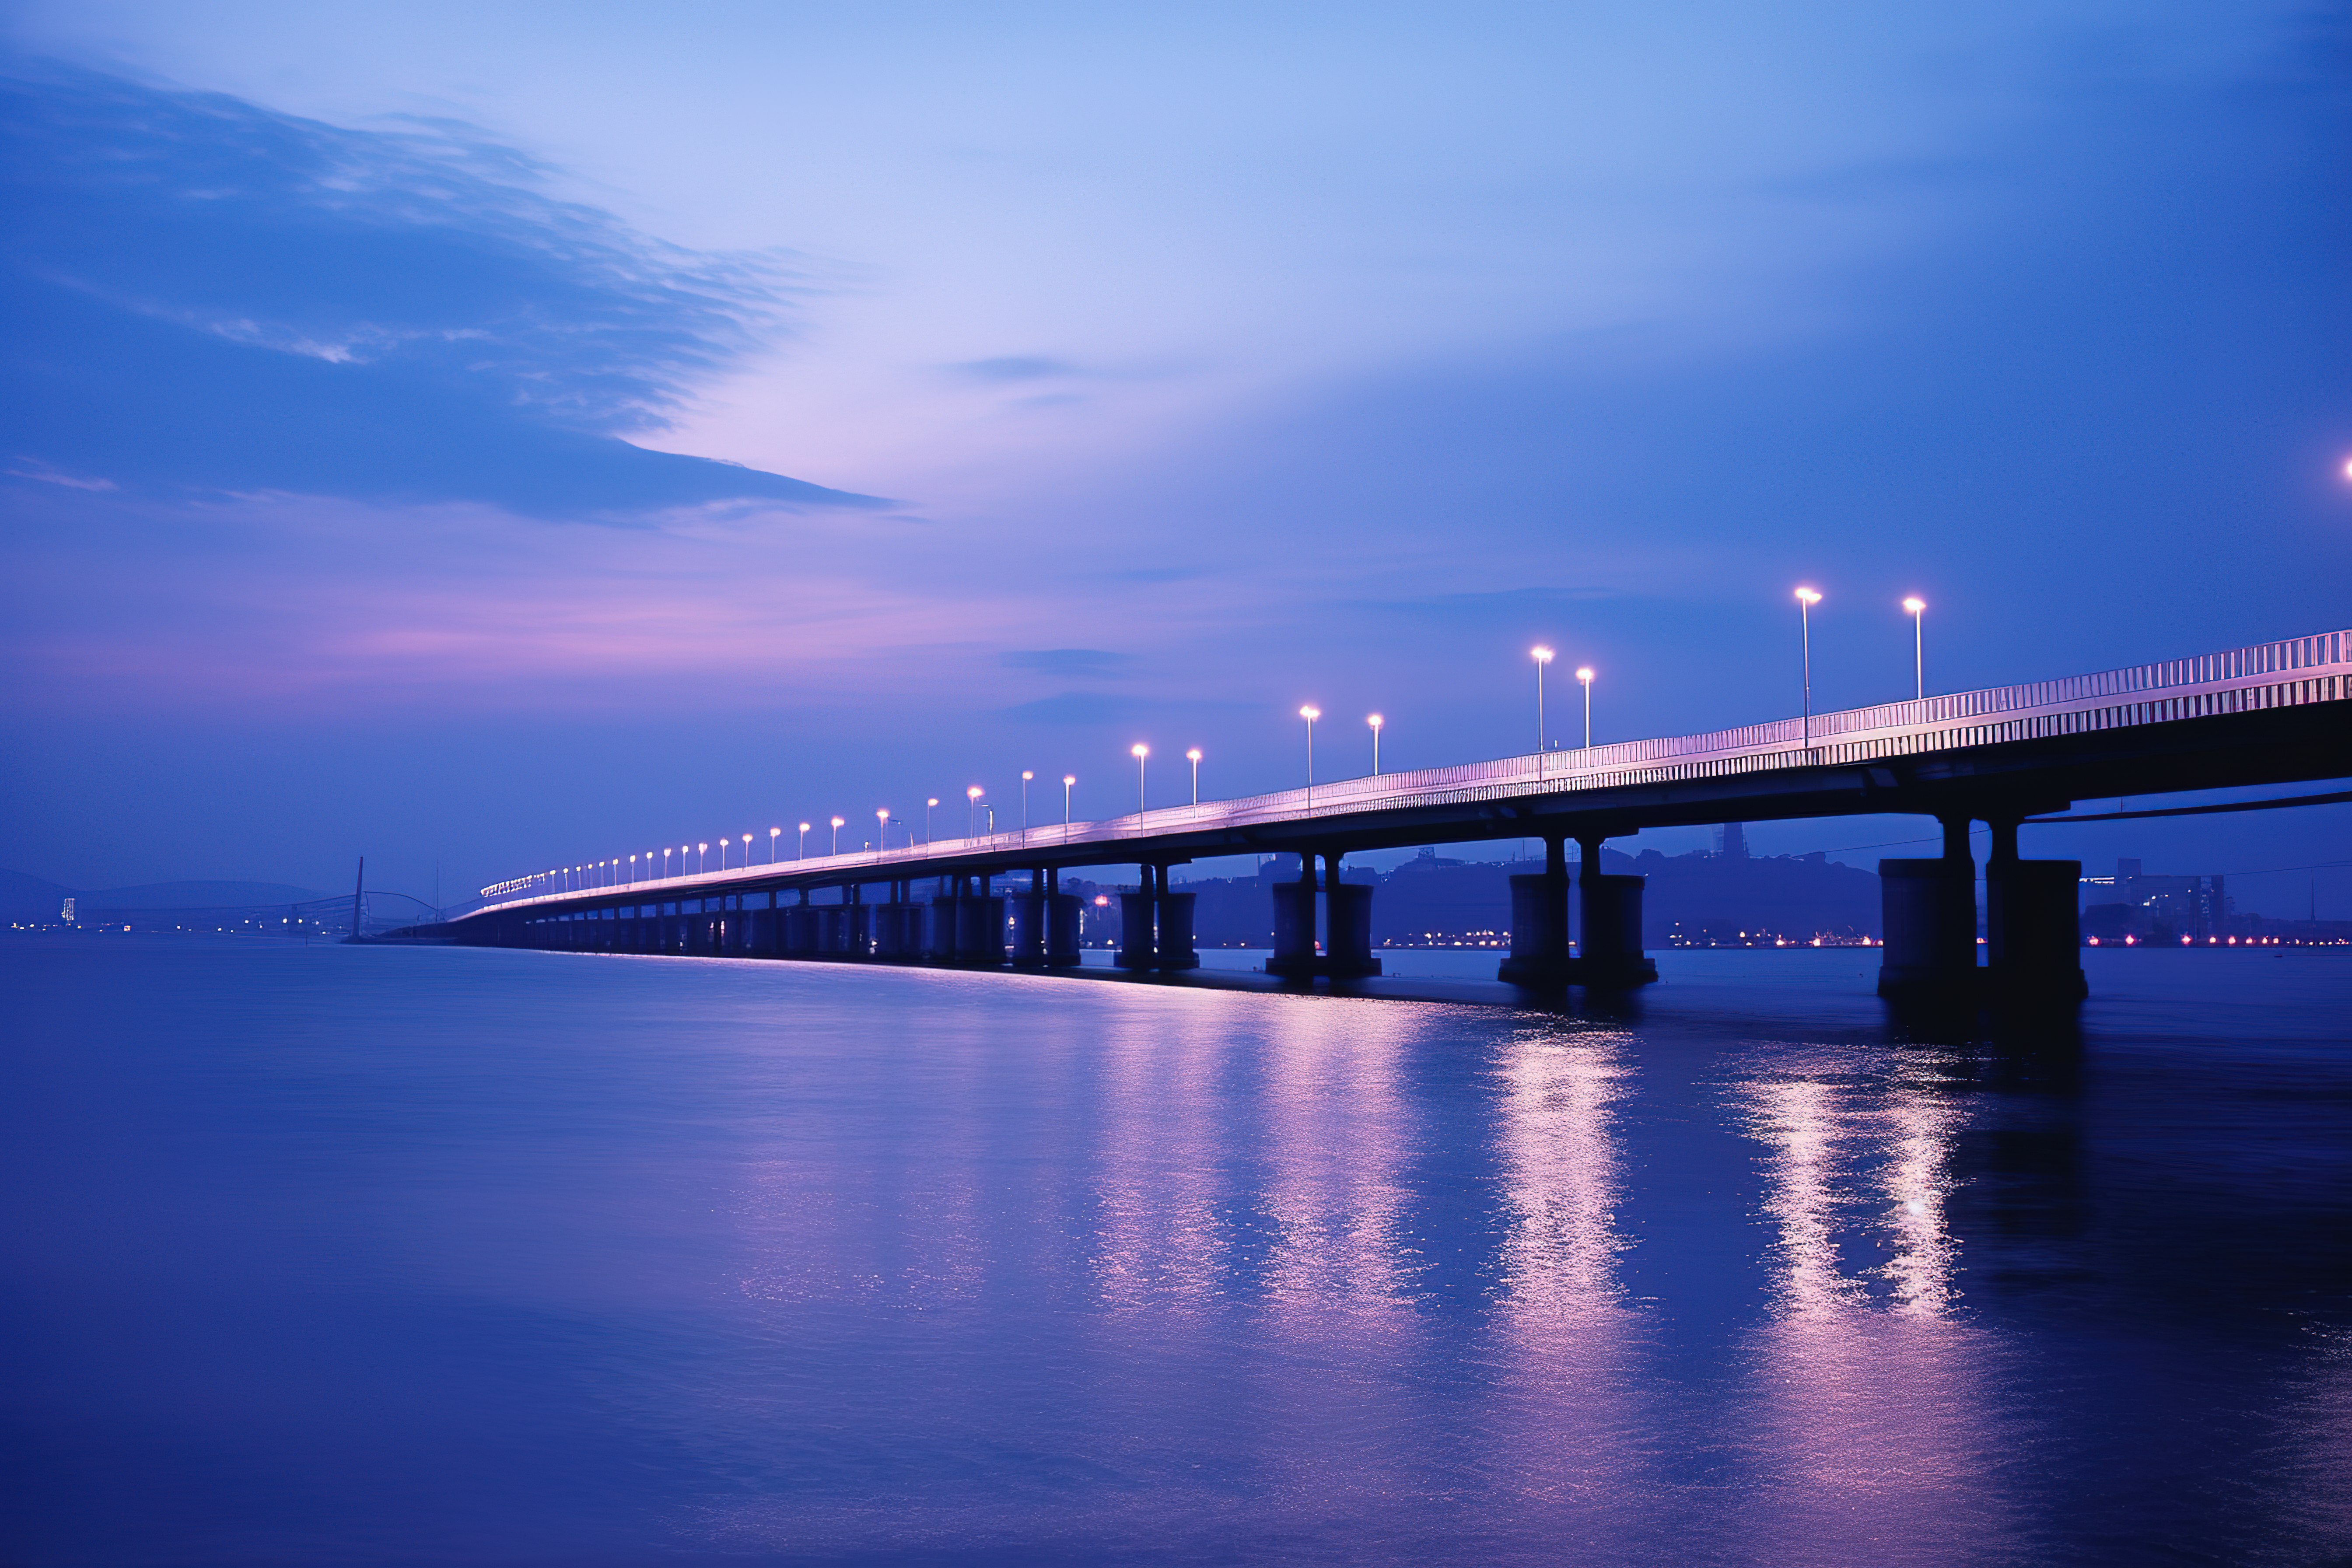 上海香港跆拳道桥和台湾南部黄昏海洋的照片图片